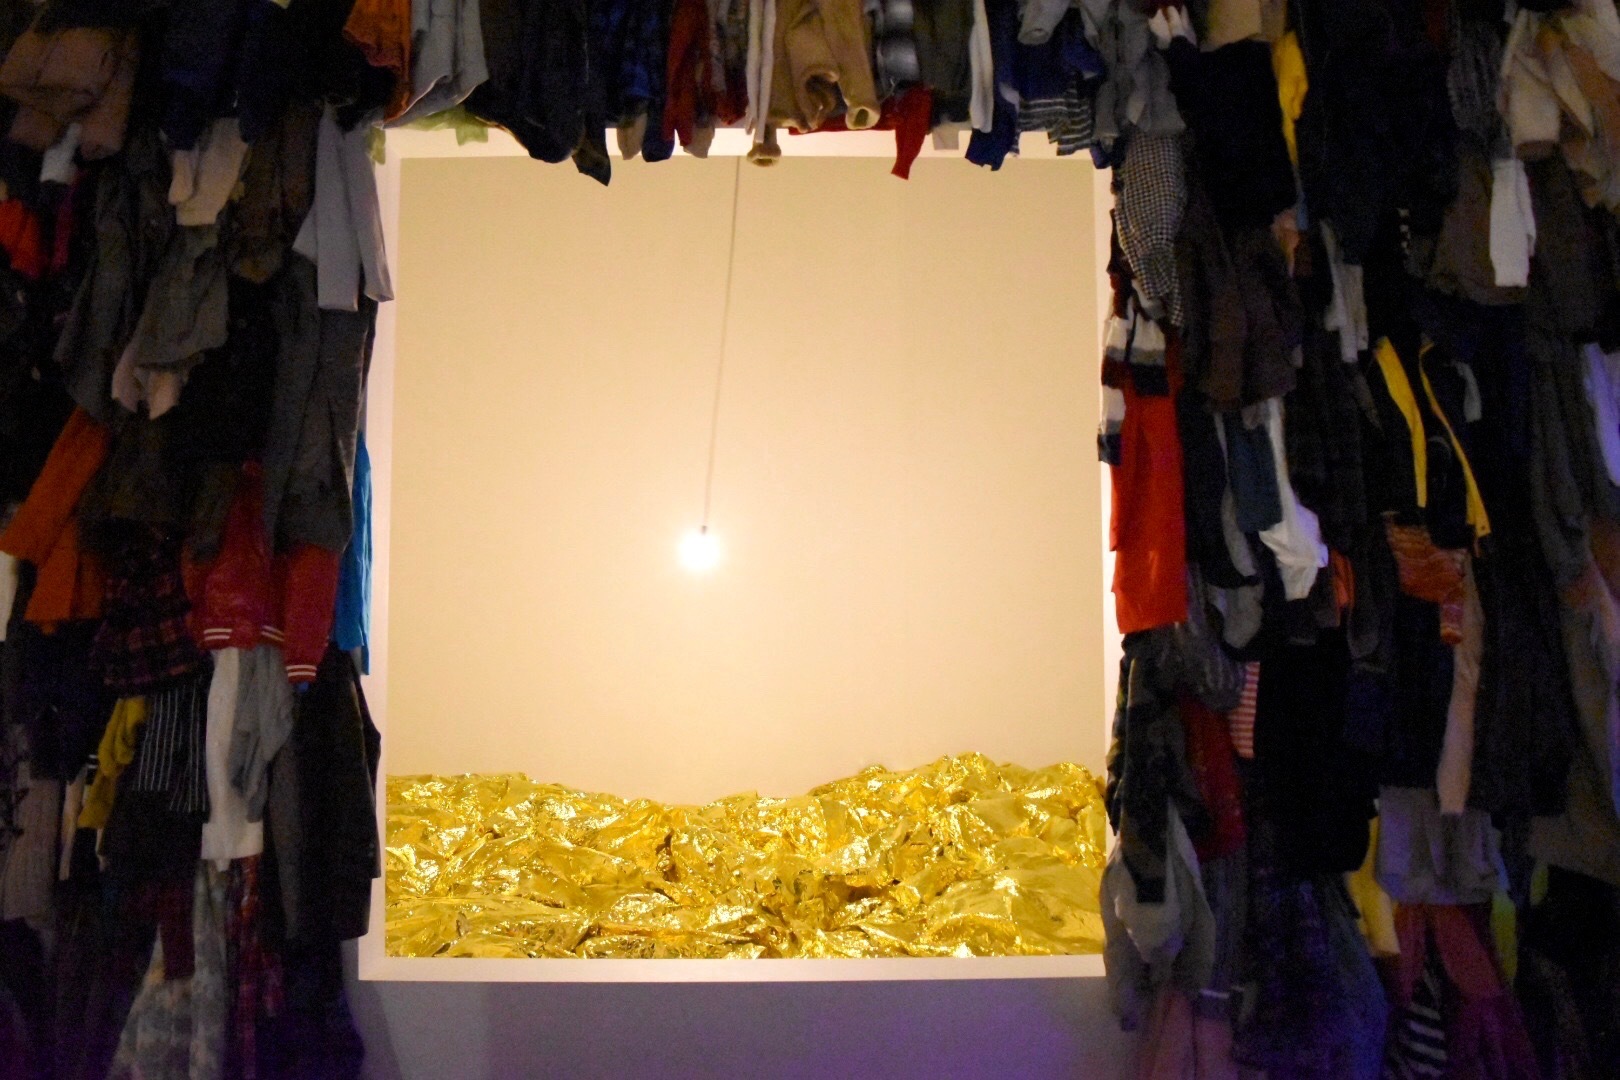 中央：《黄金の海》　2017年　側面：《保存室（カナダ）》　1988年 「クリスチャン・ボルタンスキー −Lifetime」展 2019年　国立新美術館展示風景